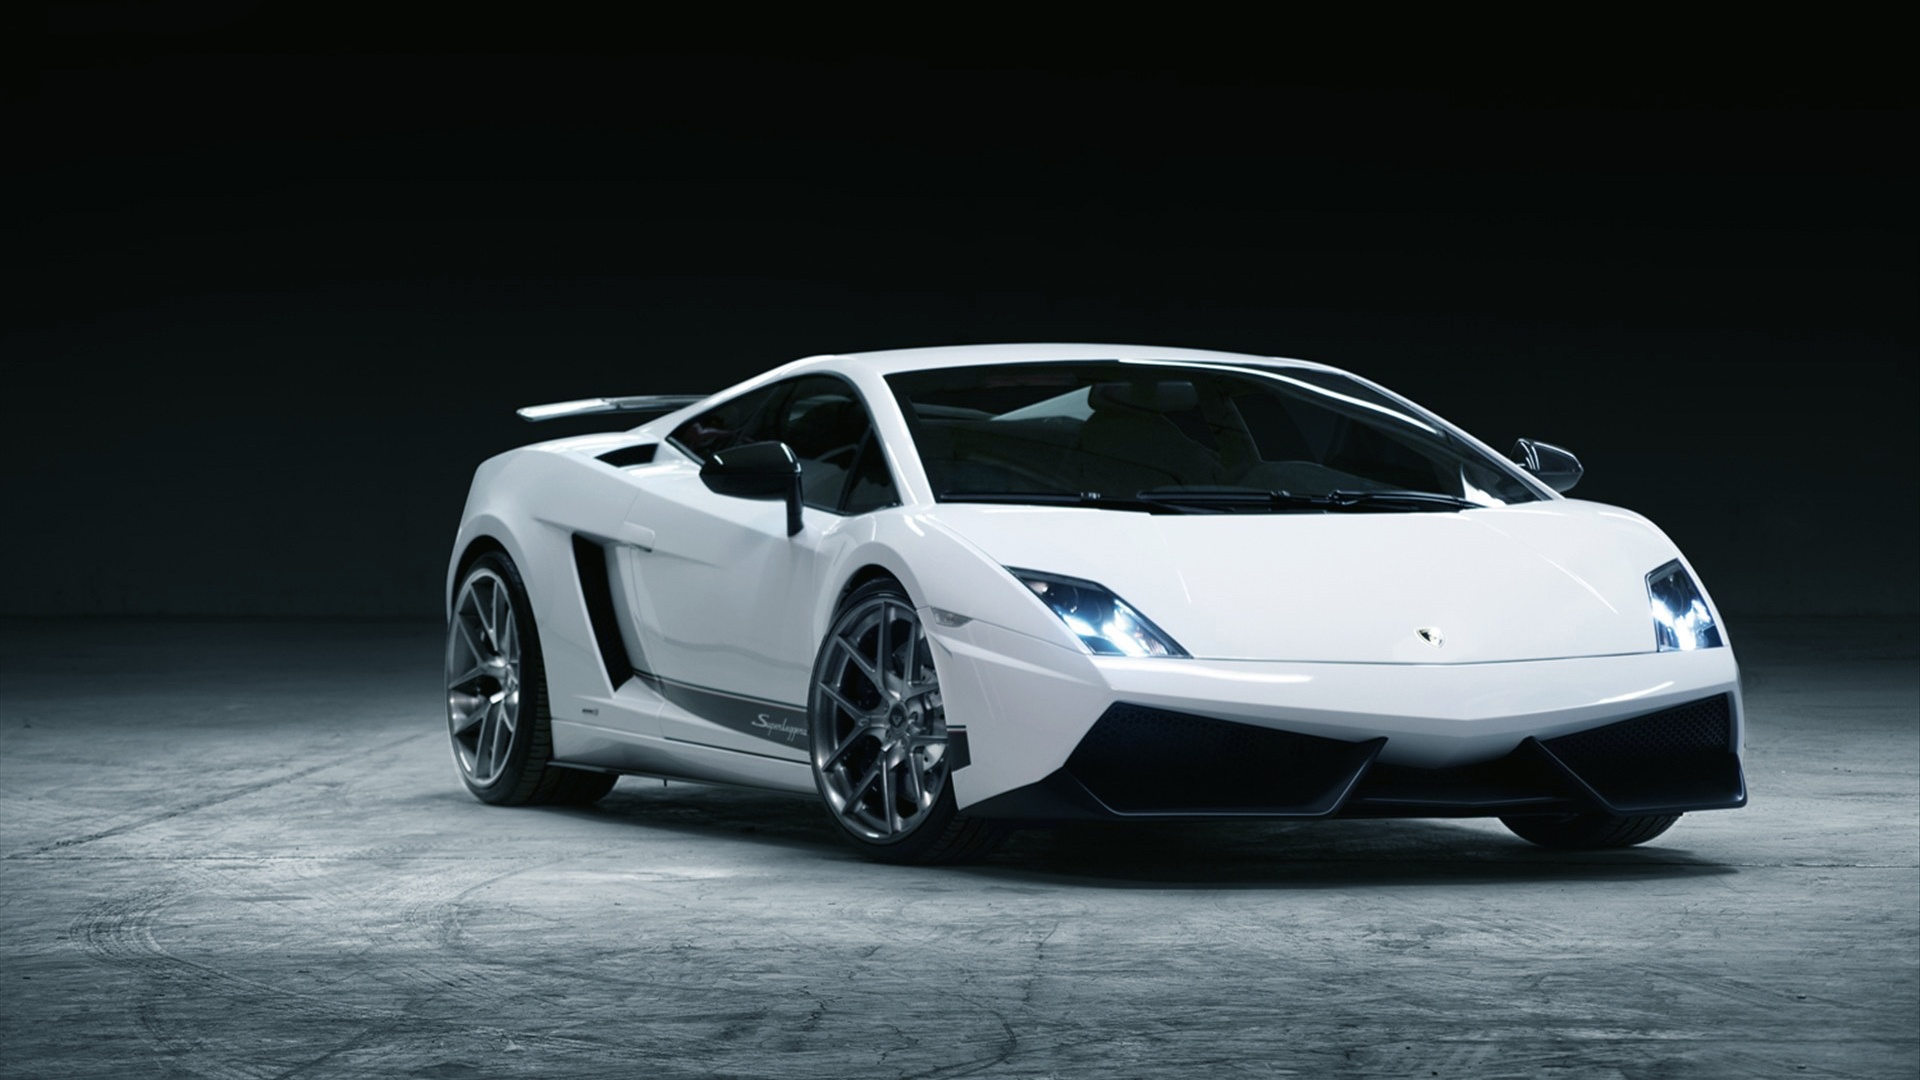 Free download White Lamborghini Murcielago Wallpaper image 378